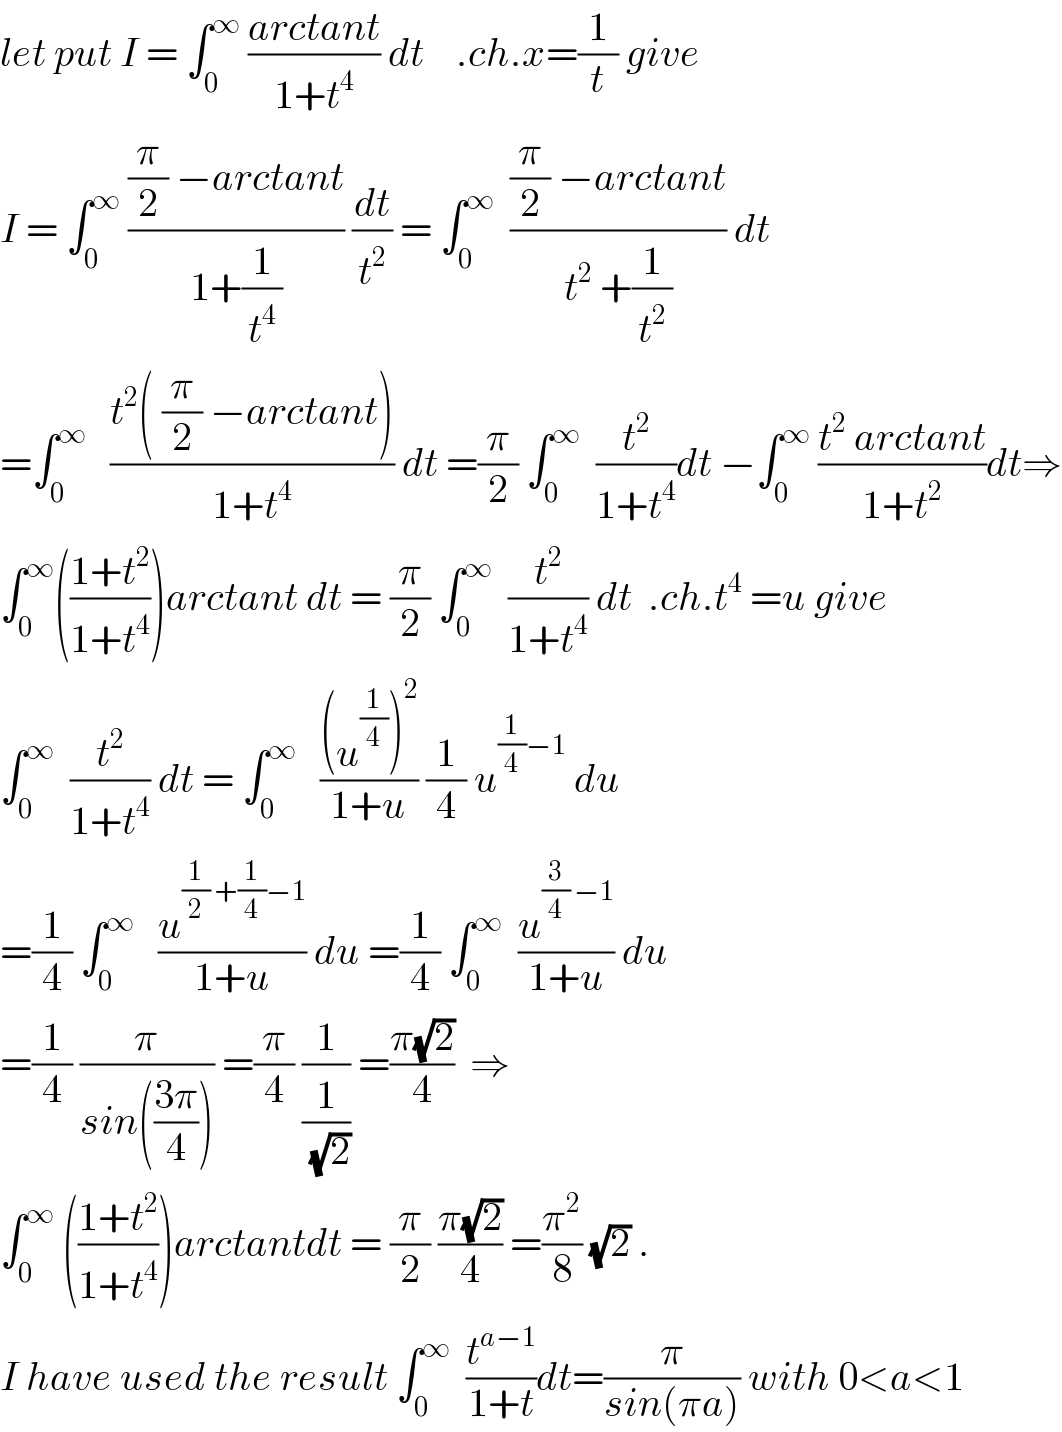 let put I = ∫_0 ^∞  ((arctant)/(1+t^4 )) dt    .ch.x=(1/t) give  I = ∫_0 ^∞  (((π/2) −arctant)/(1+(1/t^4 ))) (dt/t^2 ) = ∫_0 ^∞   (((π/2) −arctant)/(t^2  +(1/t^2 ))) dt  =∫_0 ^∞    ((t^2 ( (π/2) −arctant))/(1+t^4 )) dt =(π/2) ∫_0 ^∞   (t^2 /(1+t^4 ))dt −∫_0 ^∞  ((t^2  arctant)/(1+t^2 ))dt⇒  ∫_0 ^∞ (((1+t^2 )/(1+t^4 )))arctant dt = (π/2) ∫_0 ^∞   (t^2 /(1+t^4 )) dt  .ch.t^4  =u give  ∫_0 ^∞   (t^2 /(1+t^4 )) dt = ∫_0 ^∞    (((u^(1/4) )^2 )/(1+u)) (1/4) u^((1/4)−1)  du  =(1/4) ∫_0 ^∞    (u^((1/2) +(1/4)−1) /(1+u)) du =(1/4) ∫_0 ^∞   (u^((3/4) −1) /(1+u)) du  =(1/4) (π/(sin(((3π)/4)))) =(π/4) (1/(1/(√2))) =((π(√2))/4)  ⇒  ∫_0 ^∞  (((1+t^2 )/(1+t^4 )))arctantdt = (π/2) ((π(√2))/4) =(π^2 /8) (√2) .  I have used the result ∫_0 ^∞   (t^(a−1) /(1+t))dt=(π/(sin(πa))) with 0<a<1  